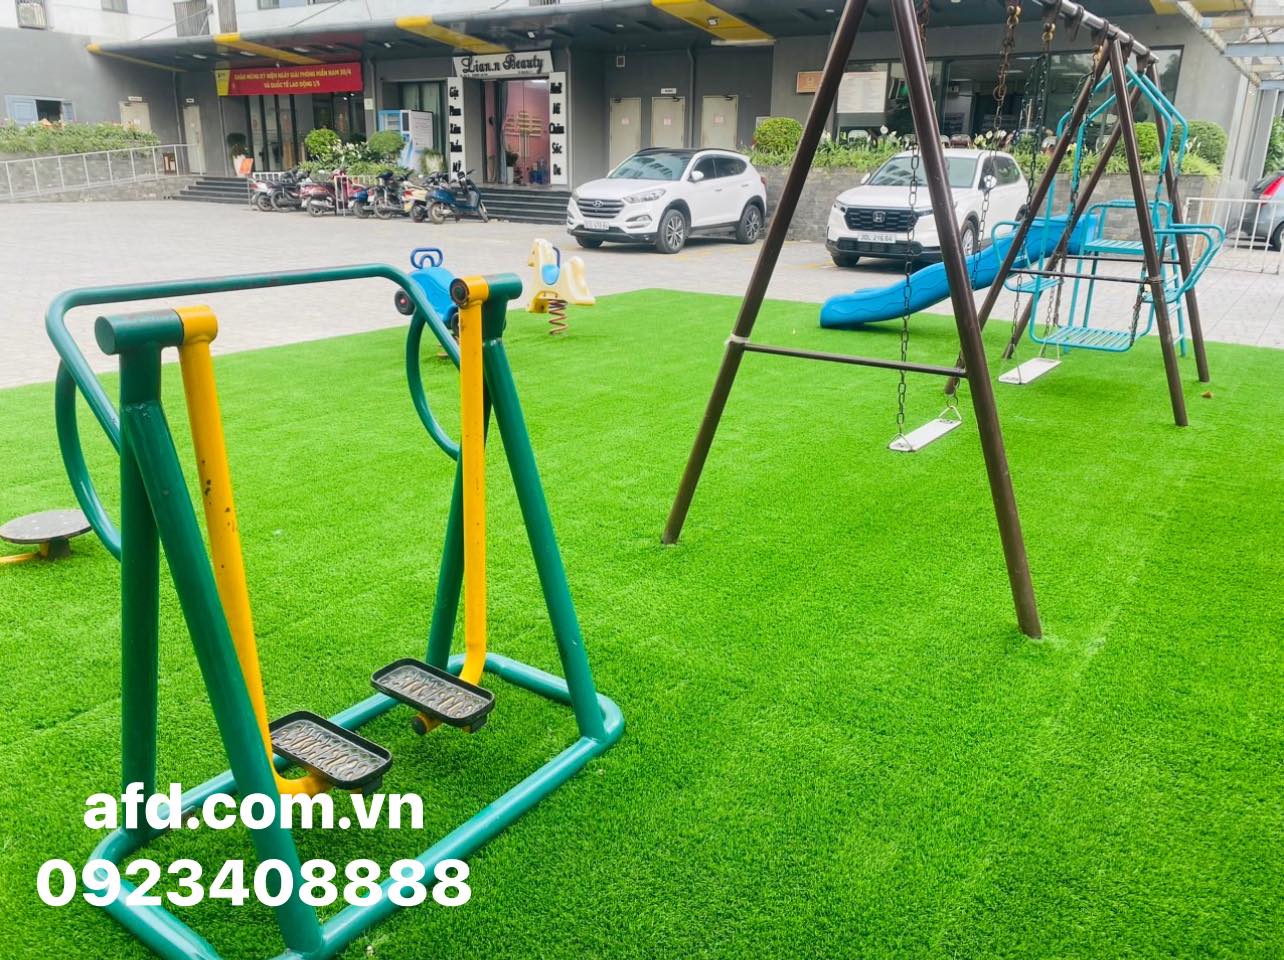 Hoàn thiện thi công cỏ nhân tạo sân khu vui chơi chung cư Rainbow Linh Đàm